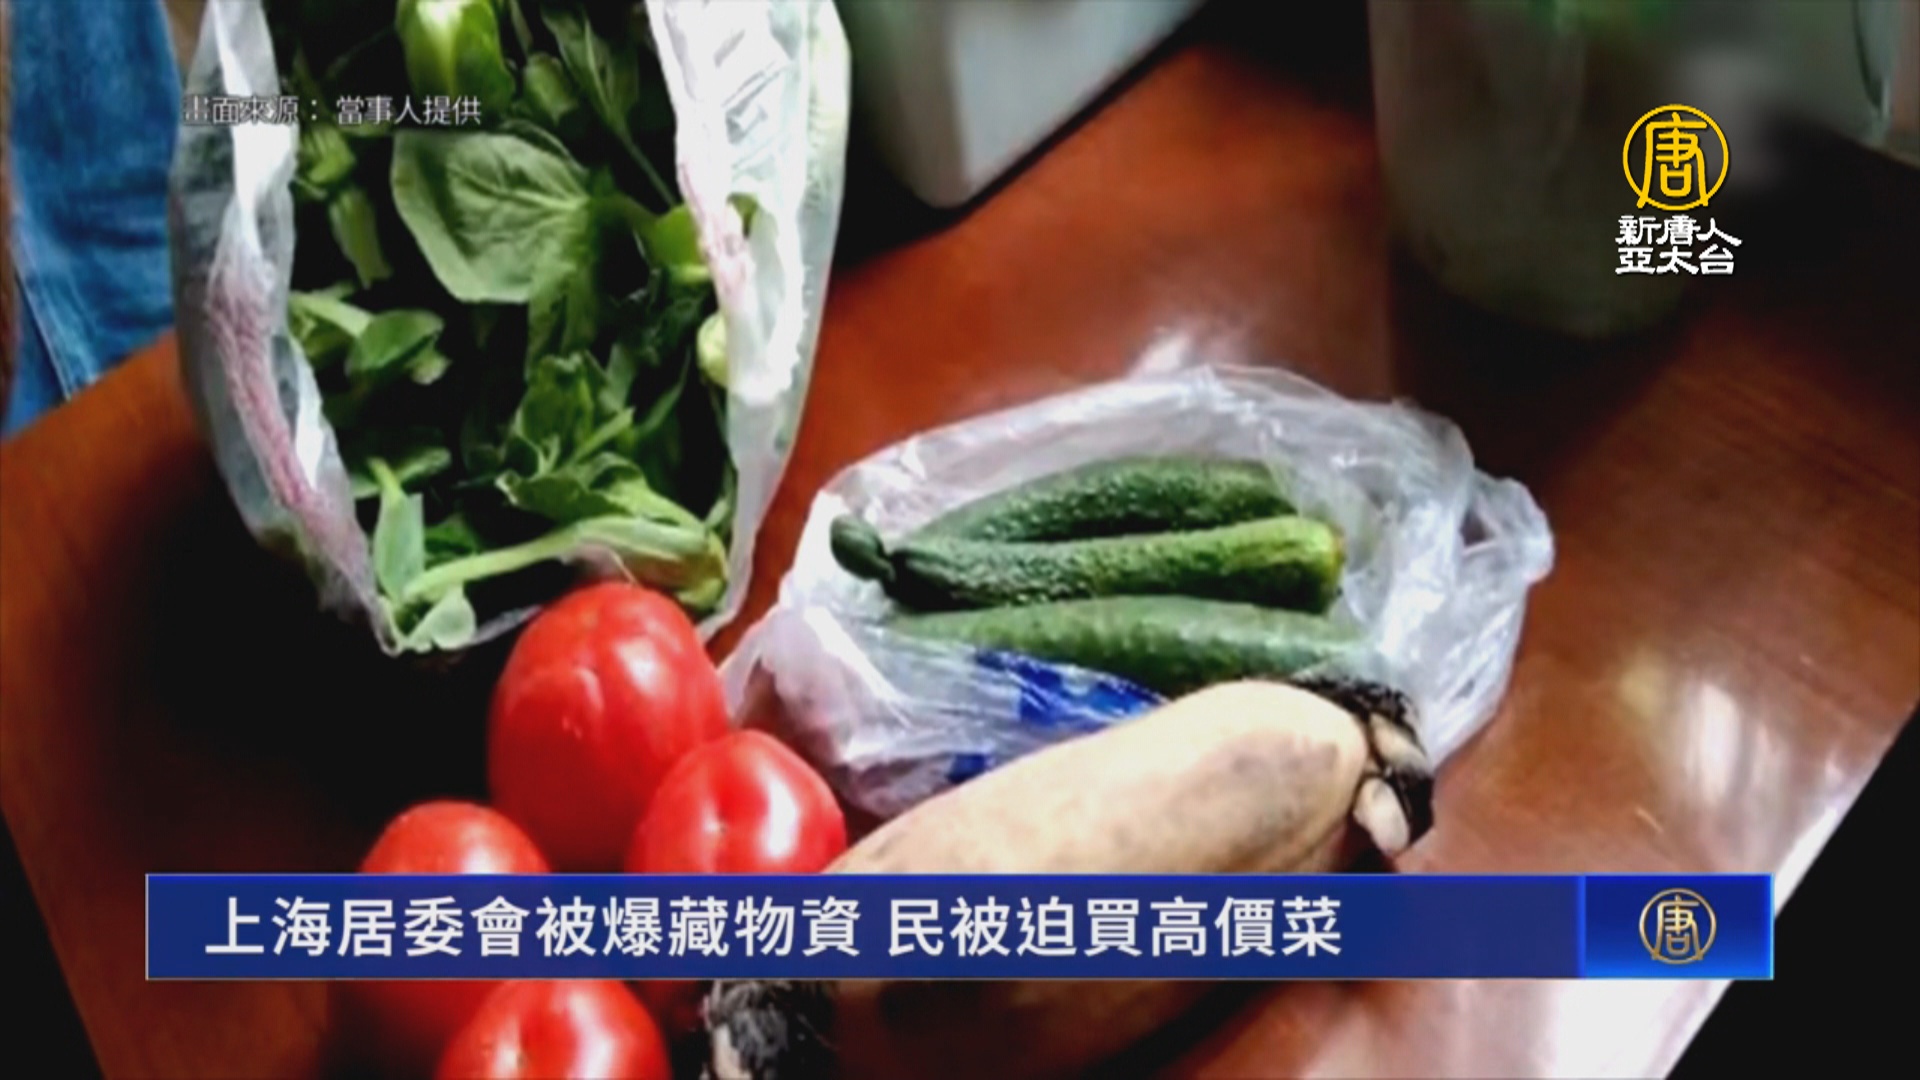 上海居委會被爆藏物資 民被迫買高價菜